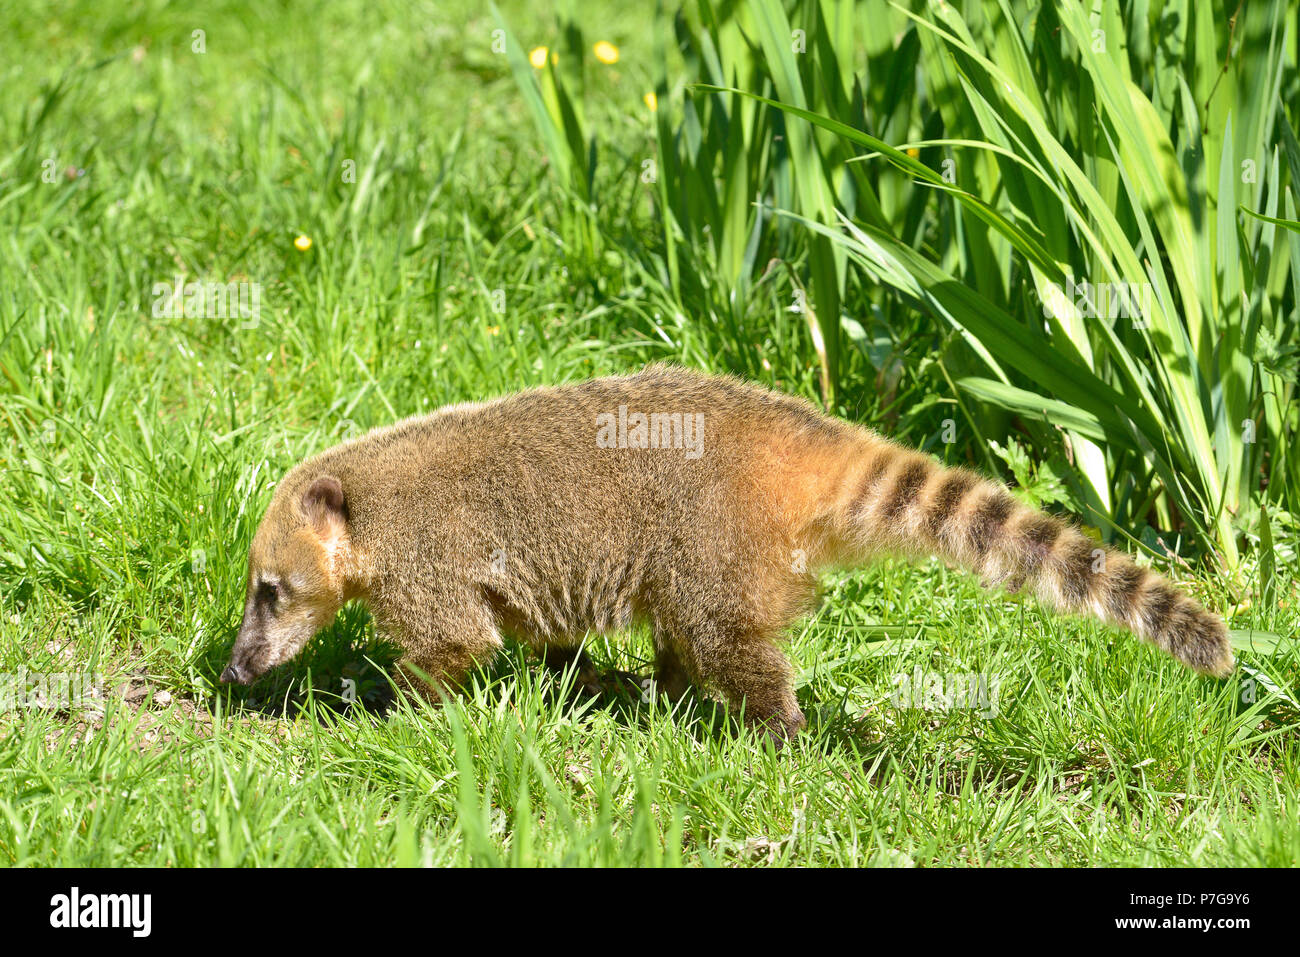 Coati, sud-américaine ou de l'anneau-tailed coati (Nasua nasua) vu de profil sur l'herbe Banque D'Images